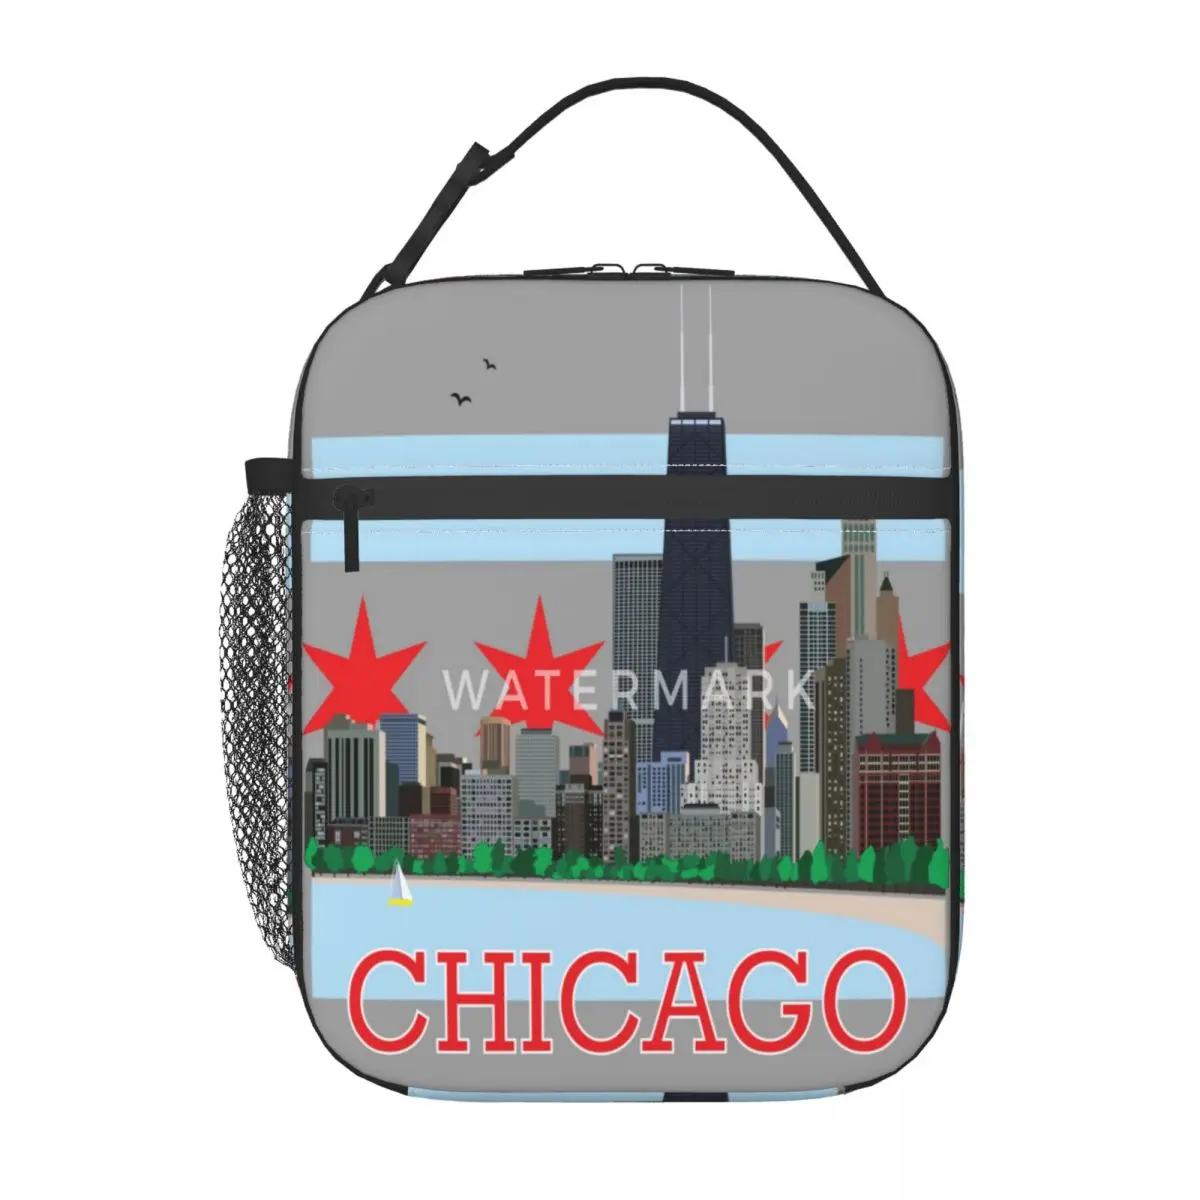 

Сумка для ланча с изображением пейнтбола и флага Чикаго, модный портативный ежедневный подарок на день рождения, настраиваемый